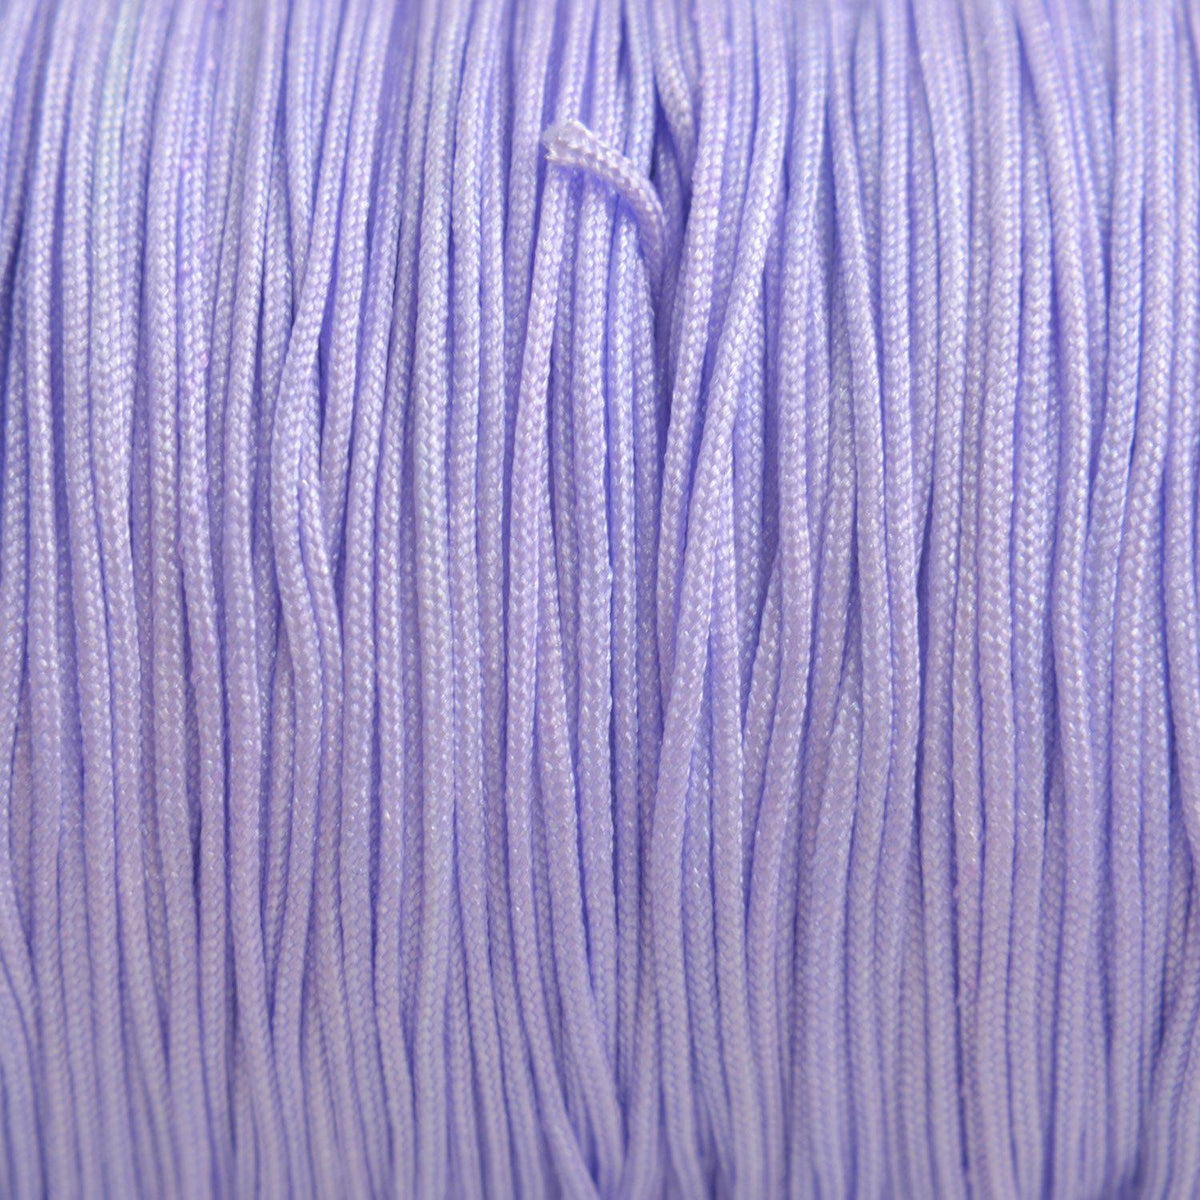 Nylon koord lila paars 0.8mm - 6 meter-Kraaltjes van Renate